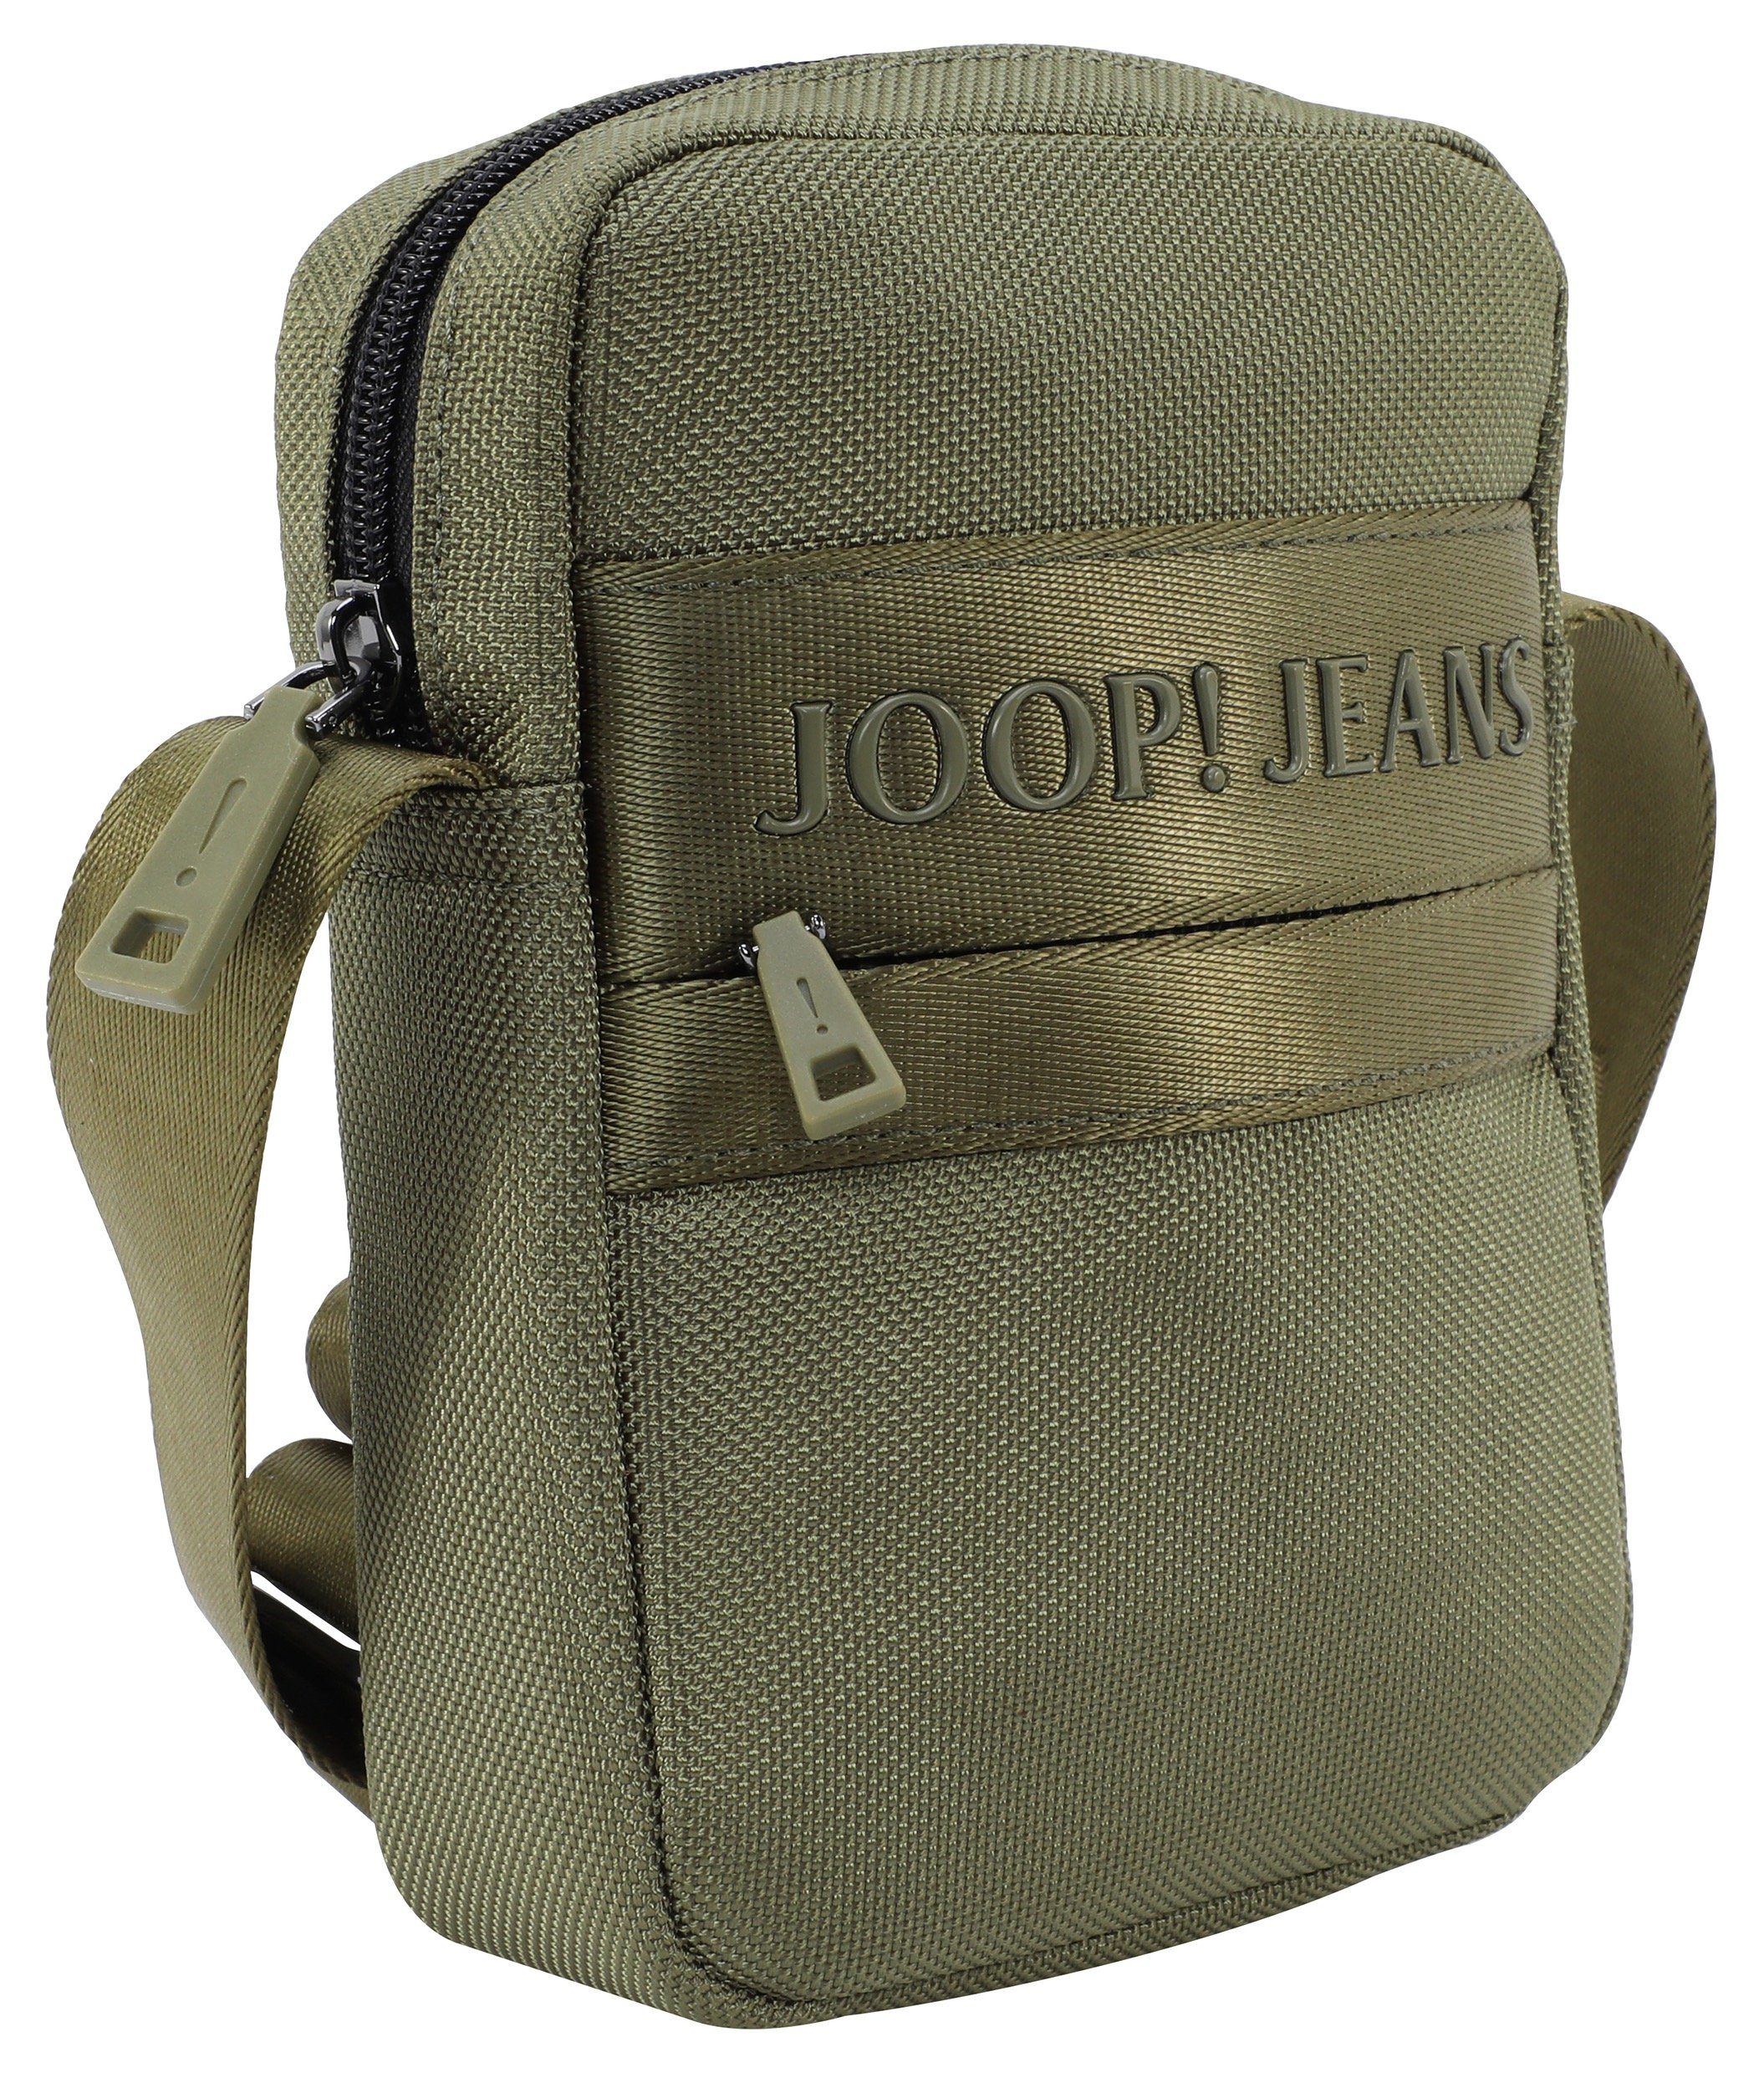 Umhängetasche shoulderbag dunkelgrün im Design modica rafael Joop Jeans praktischen xsvz,